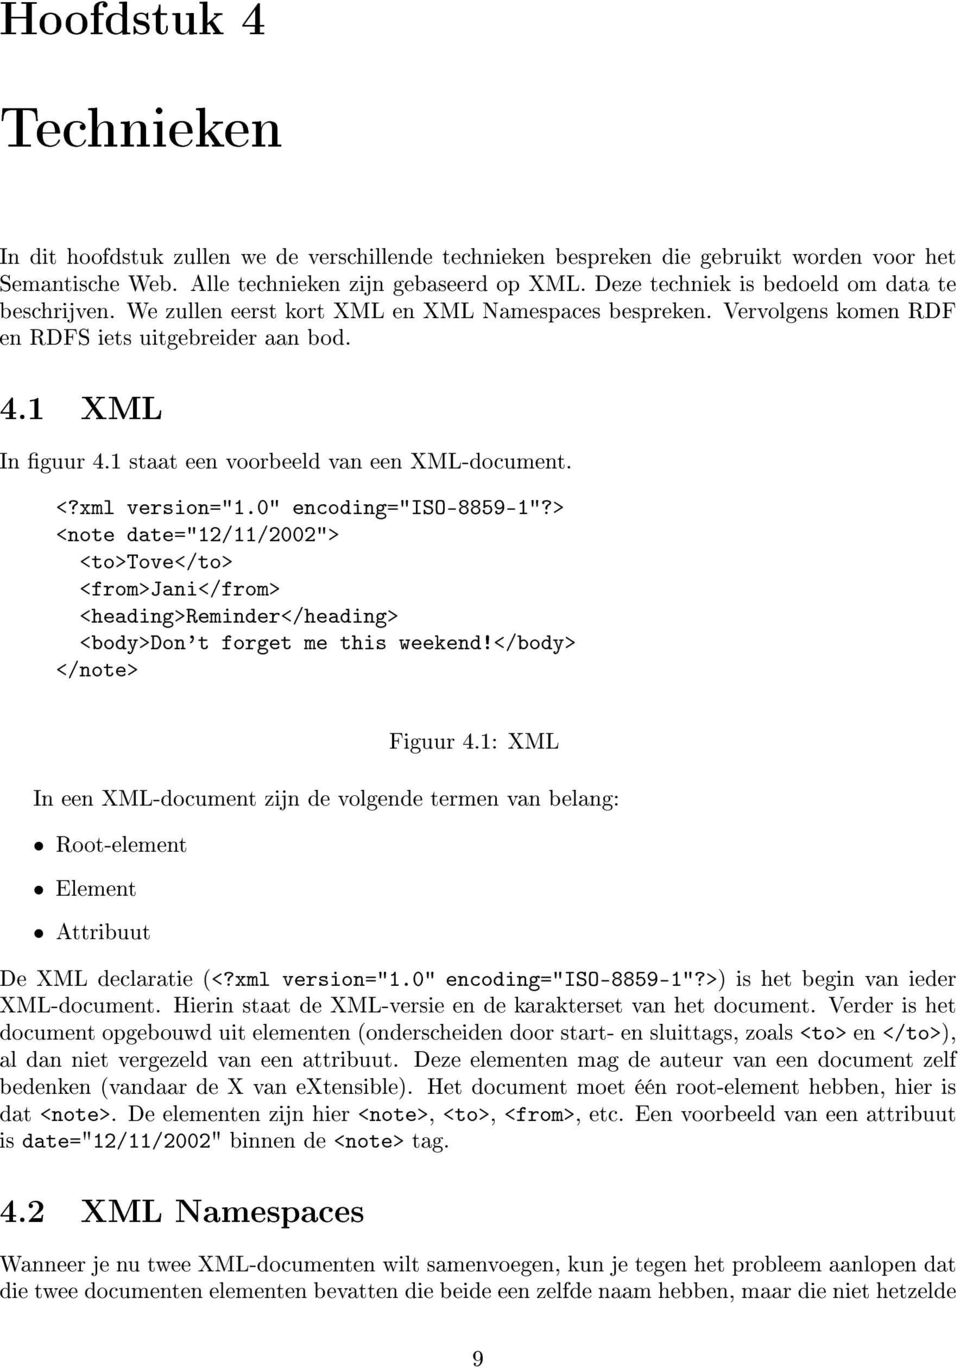 1 staat een voorbeeld van een XML-document. <?xml version="1.0" encoding="iso-8859-1"?